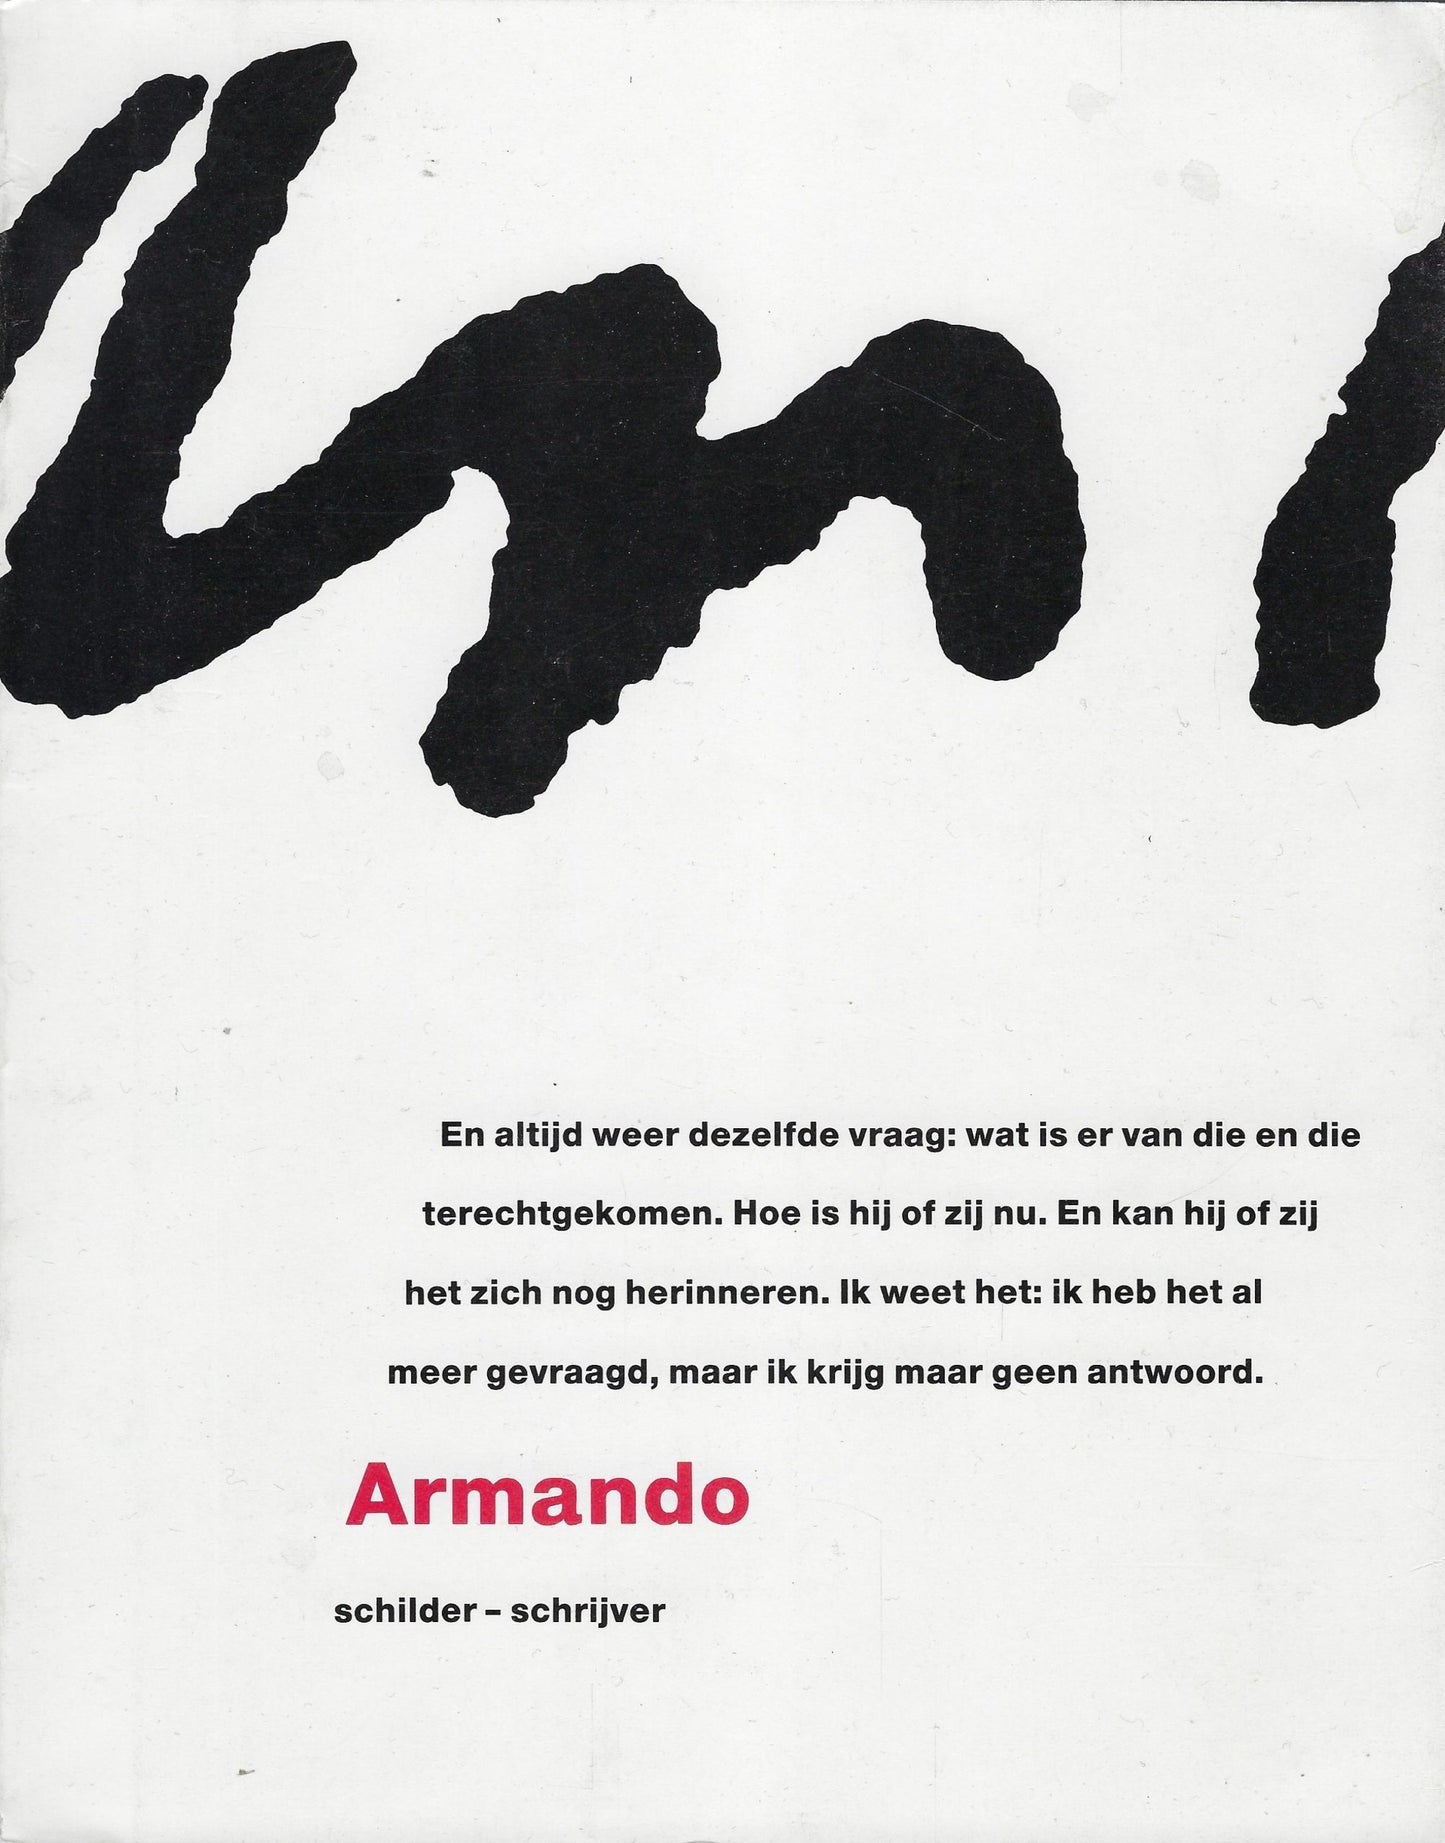 Armando schilder-schrijver